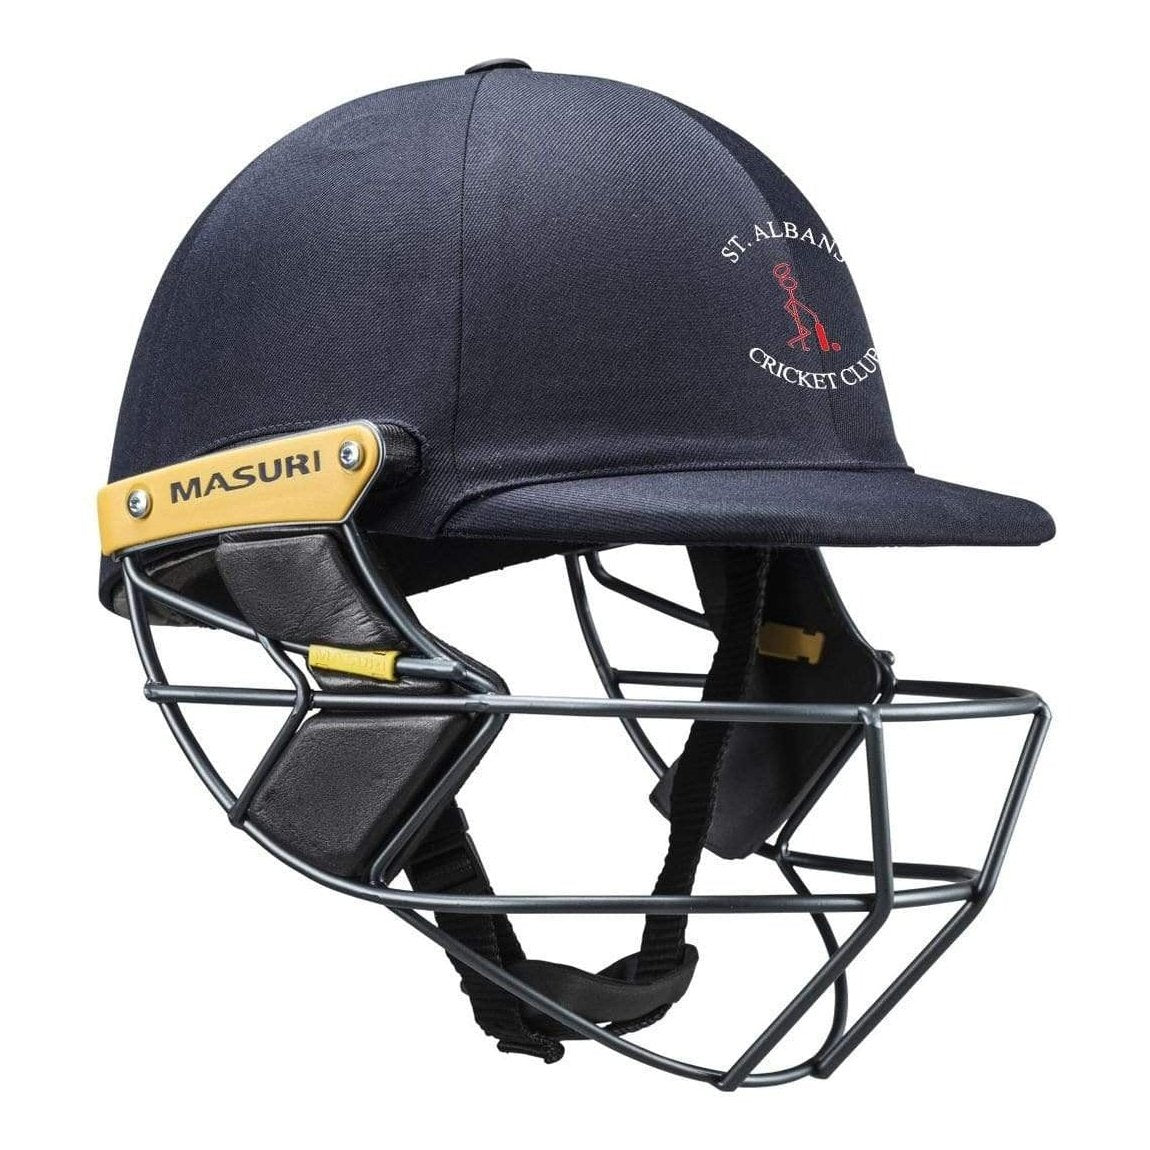 Masuri Club Helmet St Albans Cricket Club Helmet